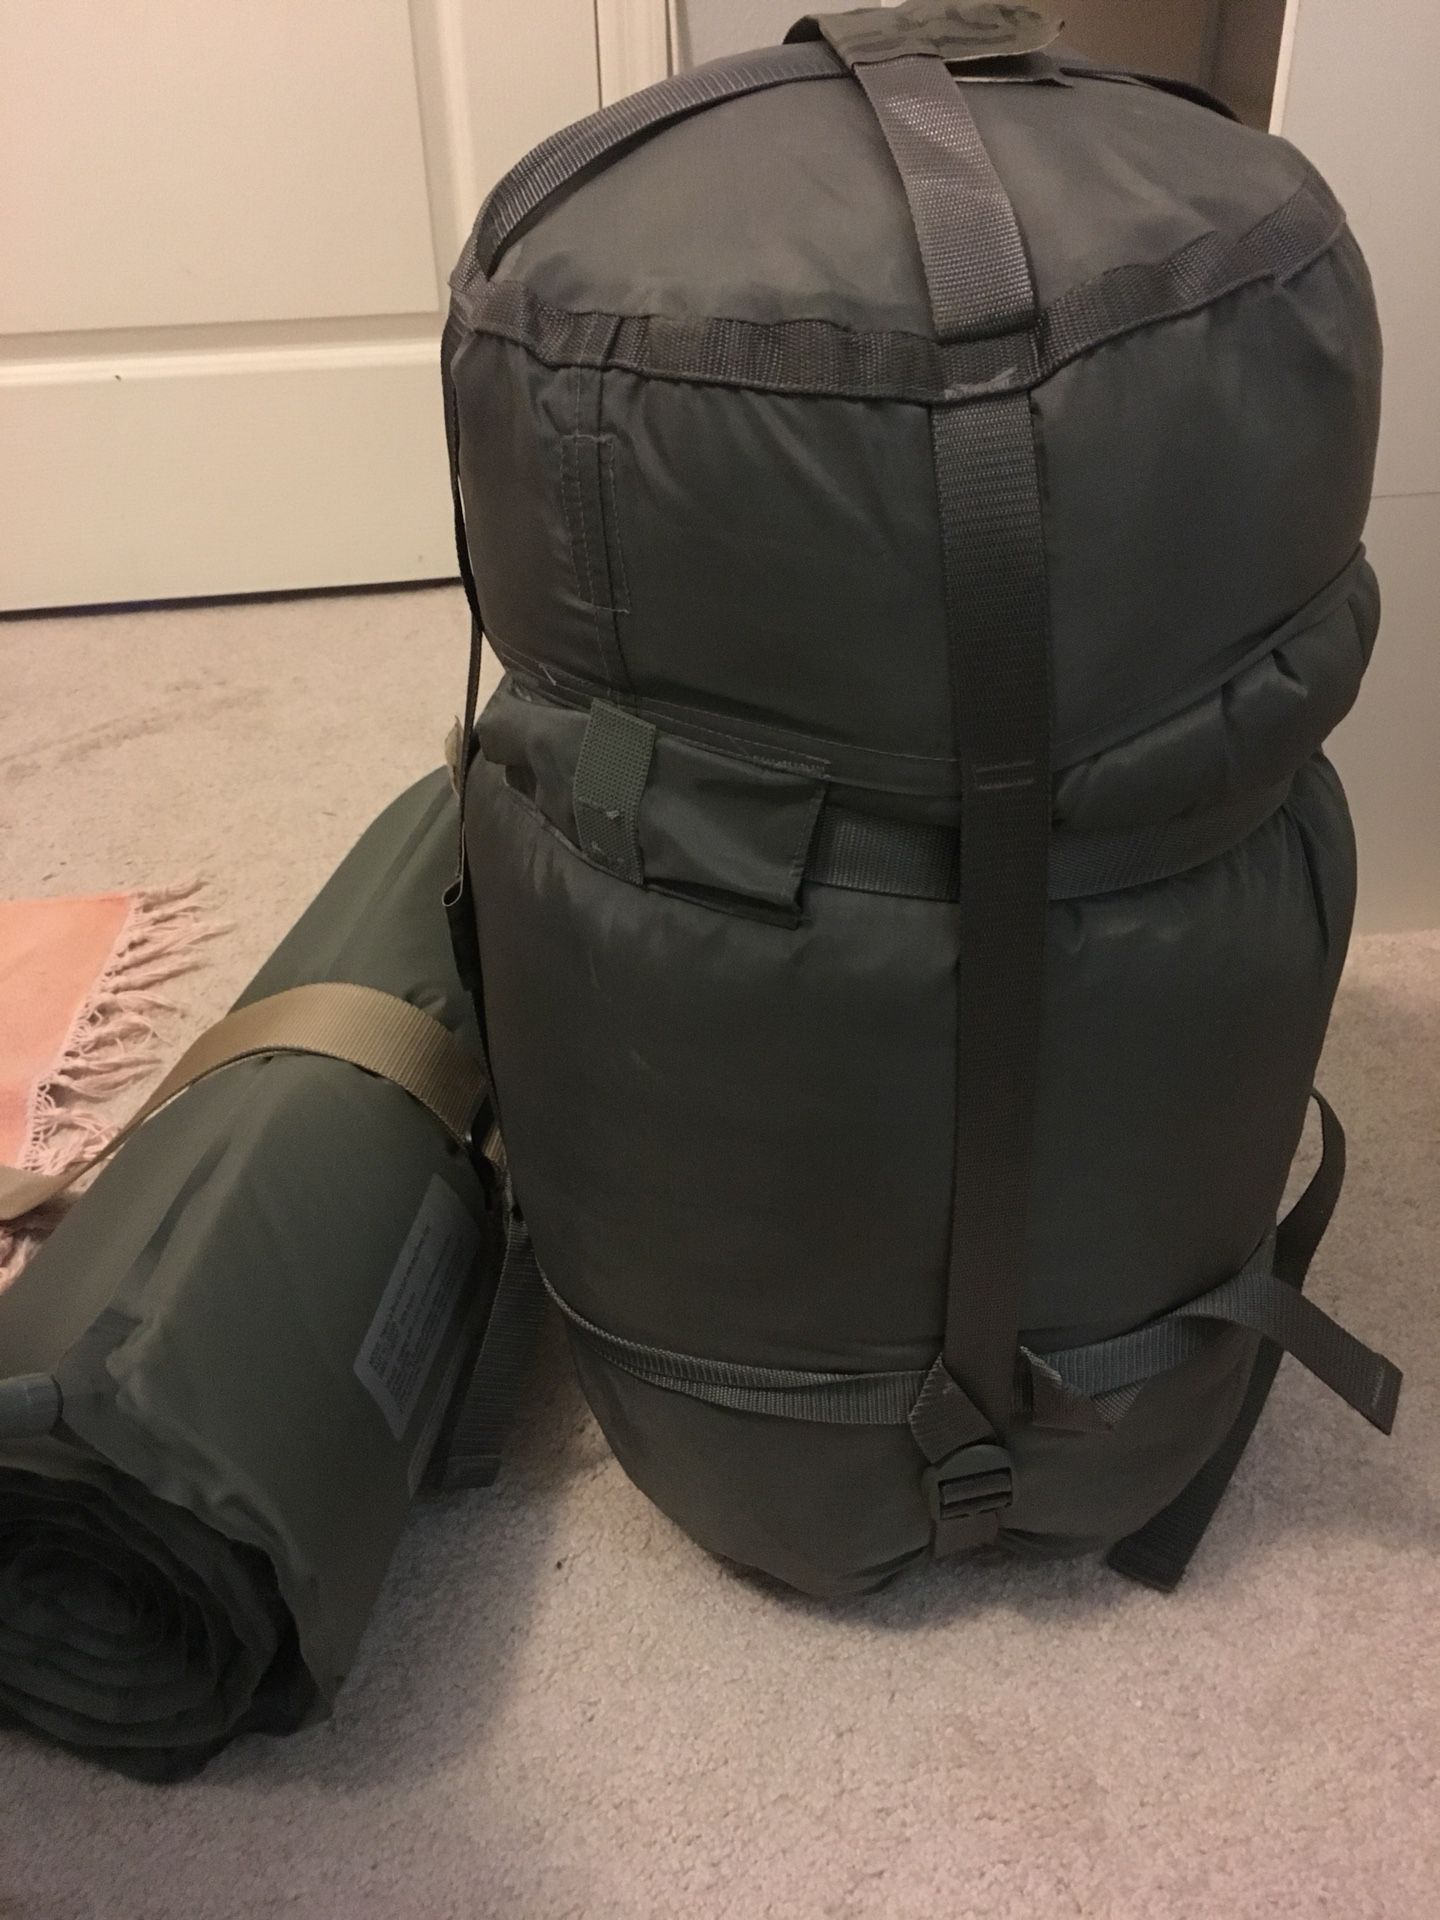 Military sleeping bag and inflatable pad